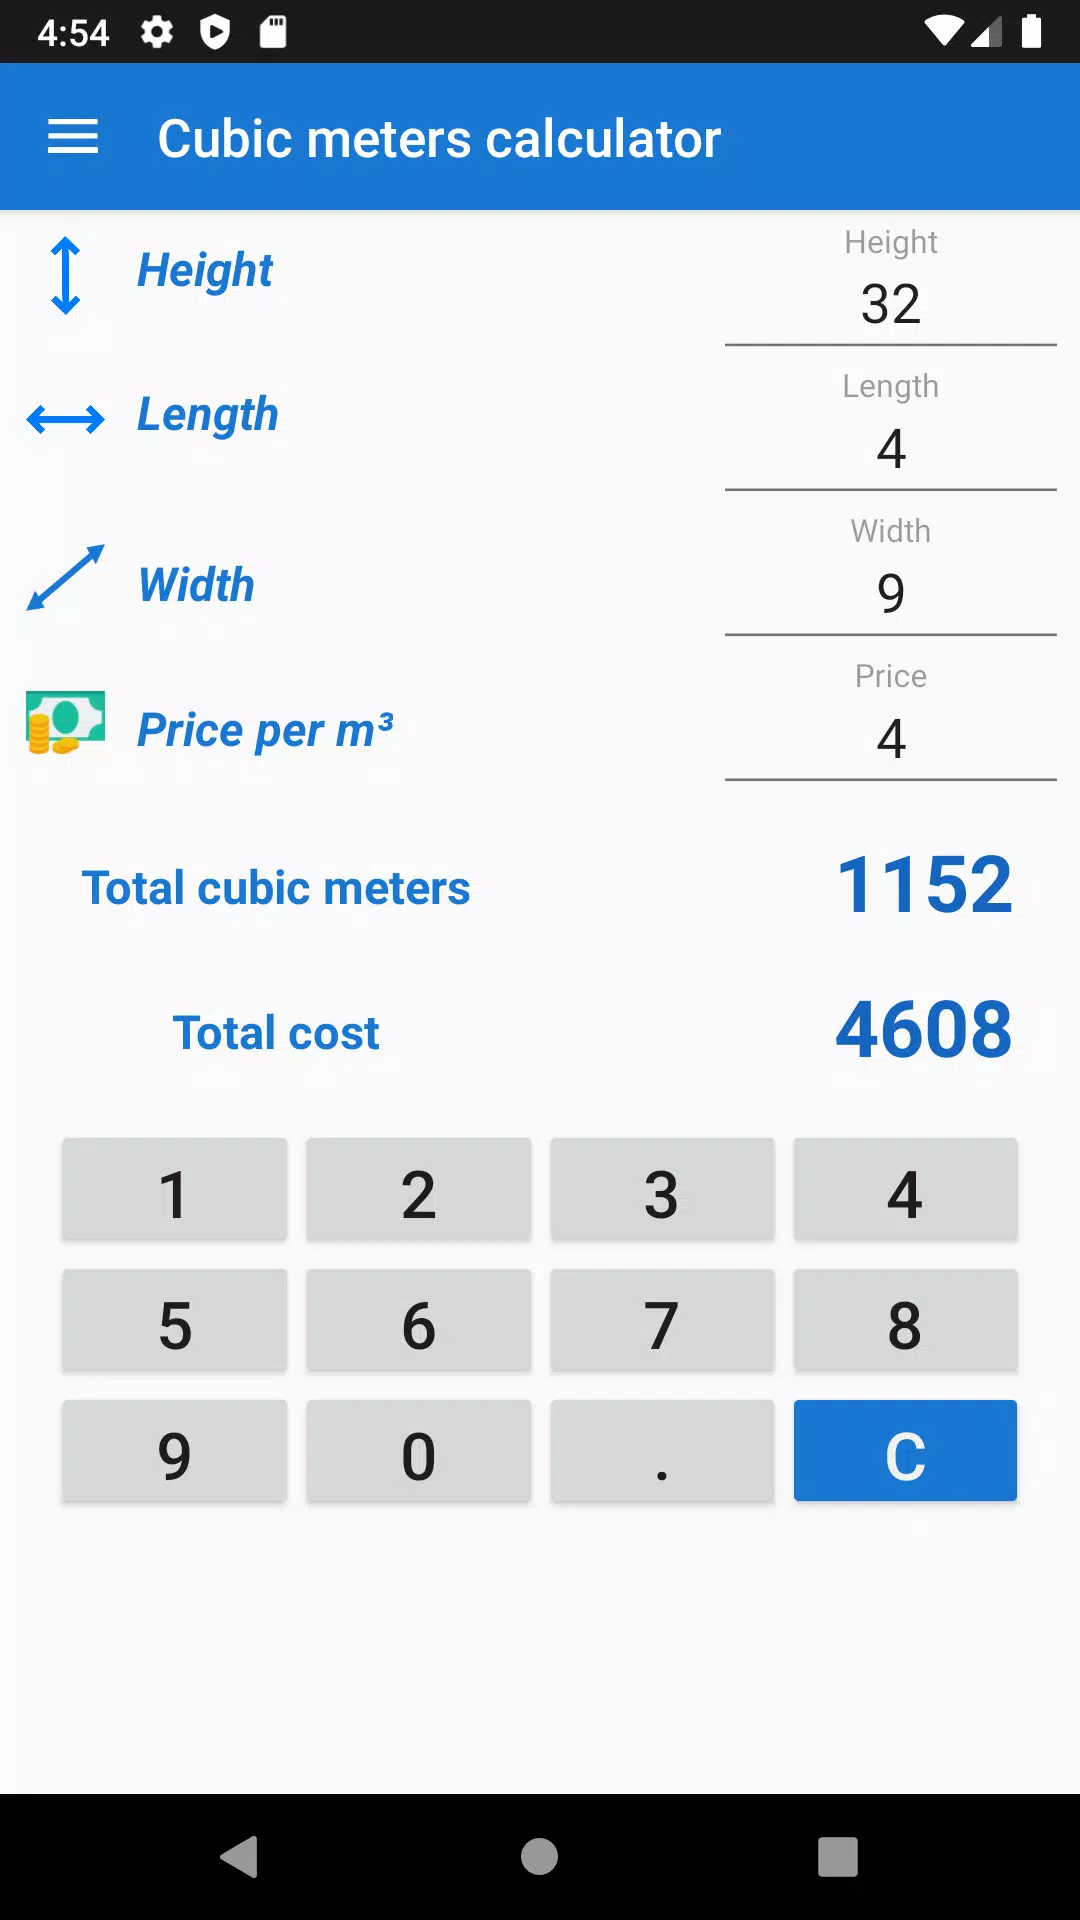 Descarga de APK de Calculadora de metros cúbicos para Android